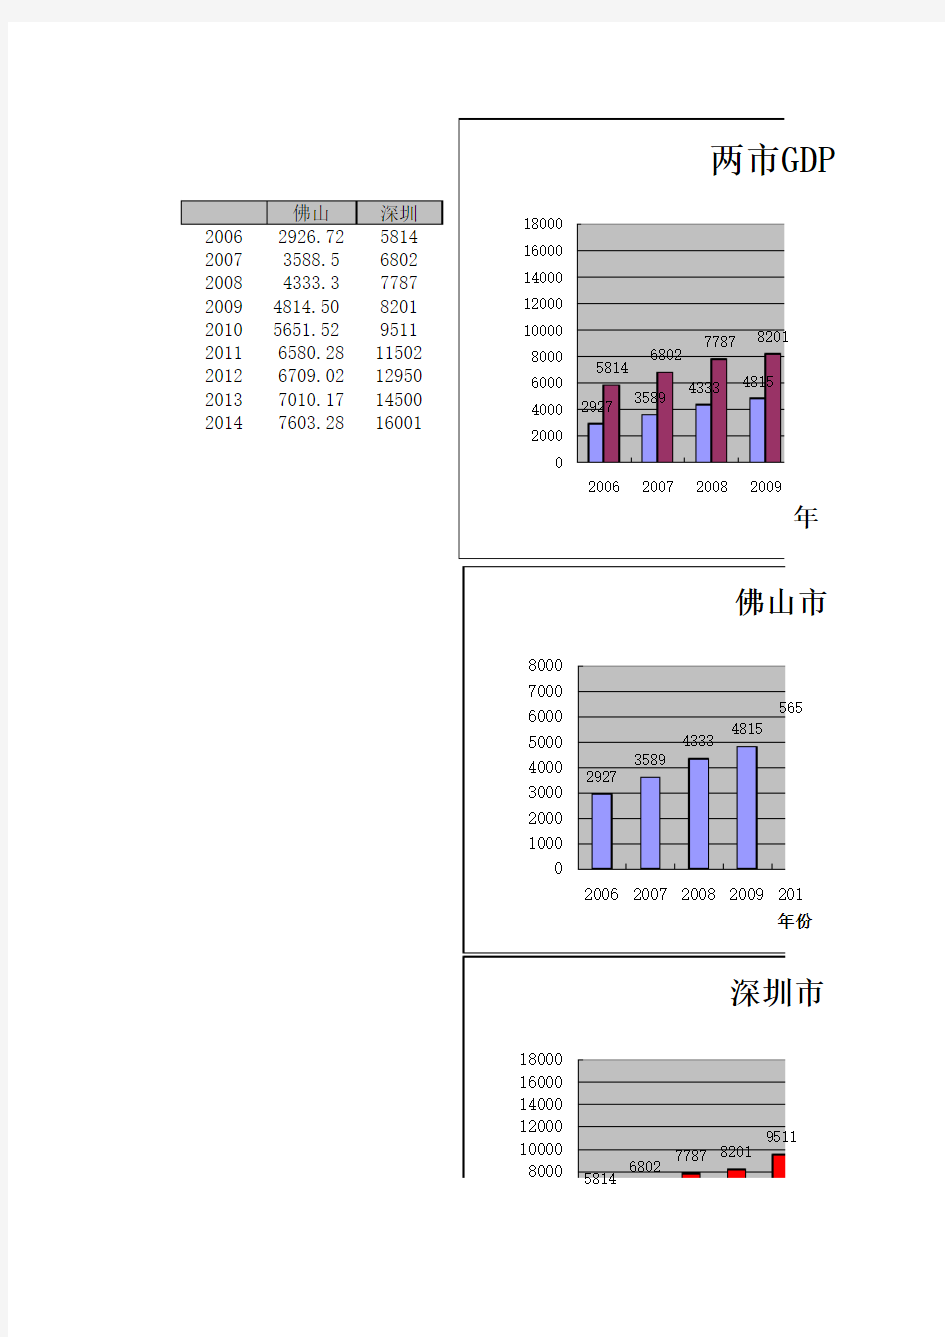 佛山南海区与深圳市GDP数据对比